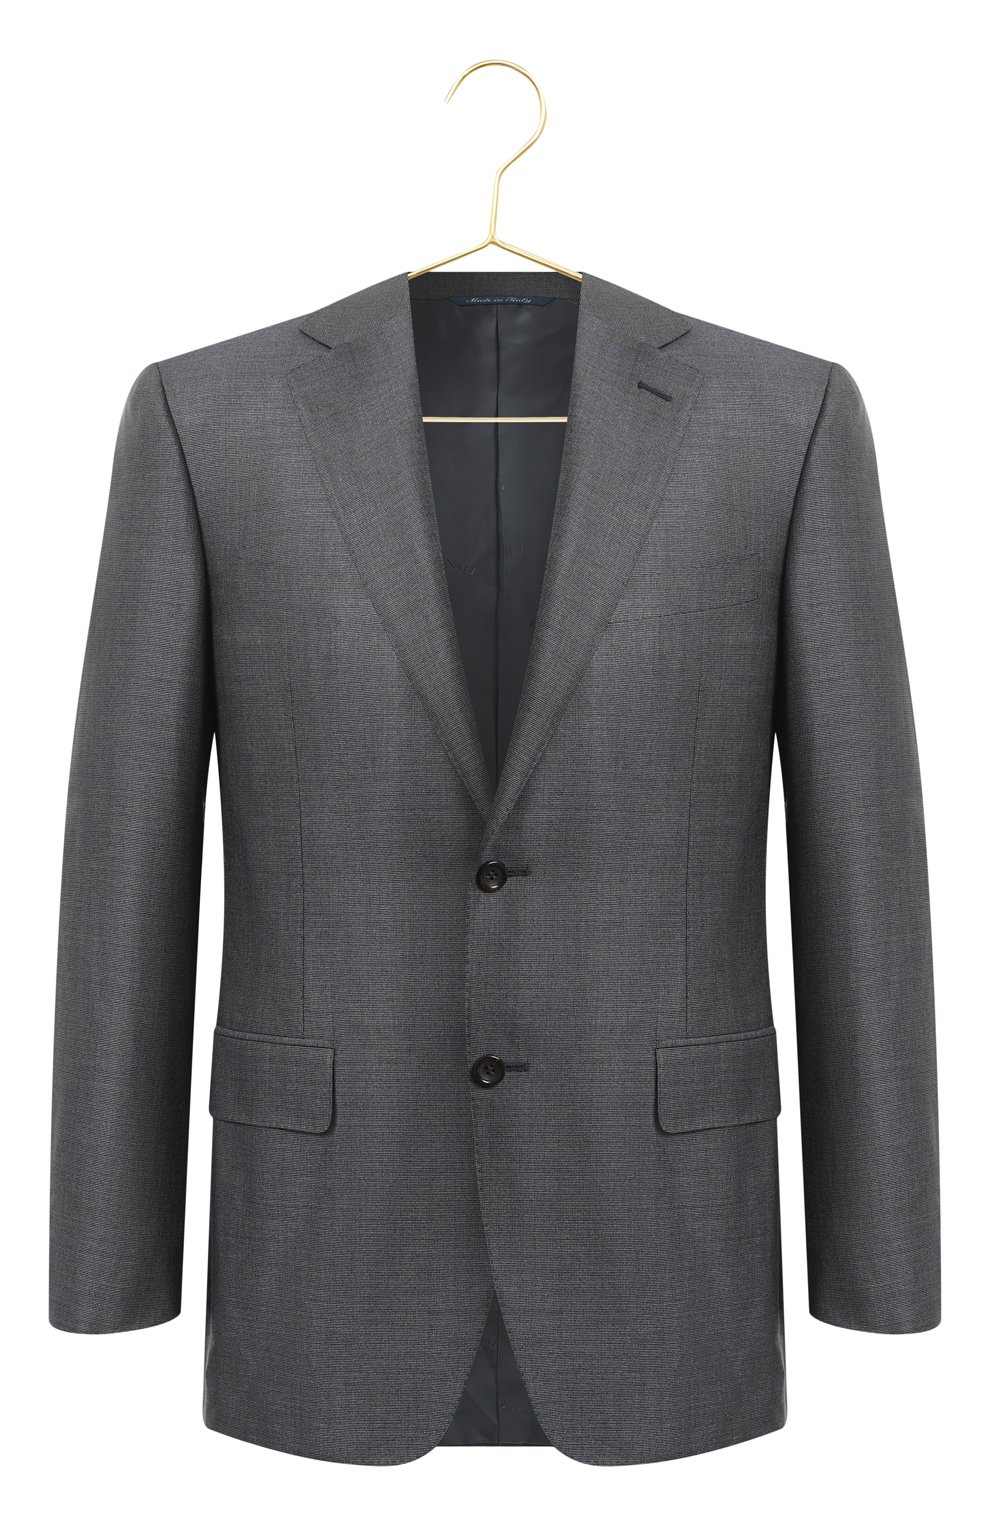 Пиджак из шерсти и шелка | Canali | Серый - 1